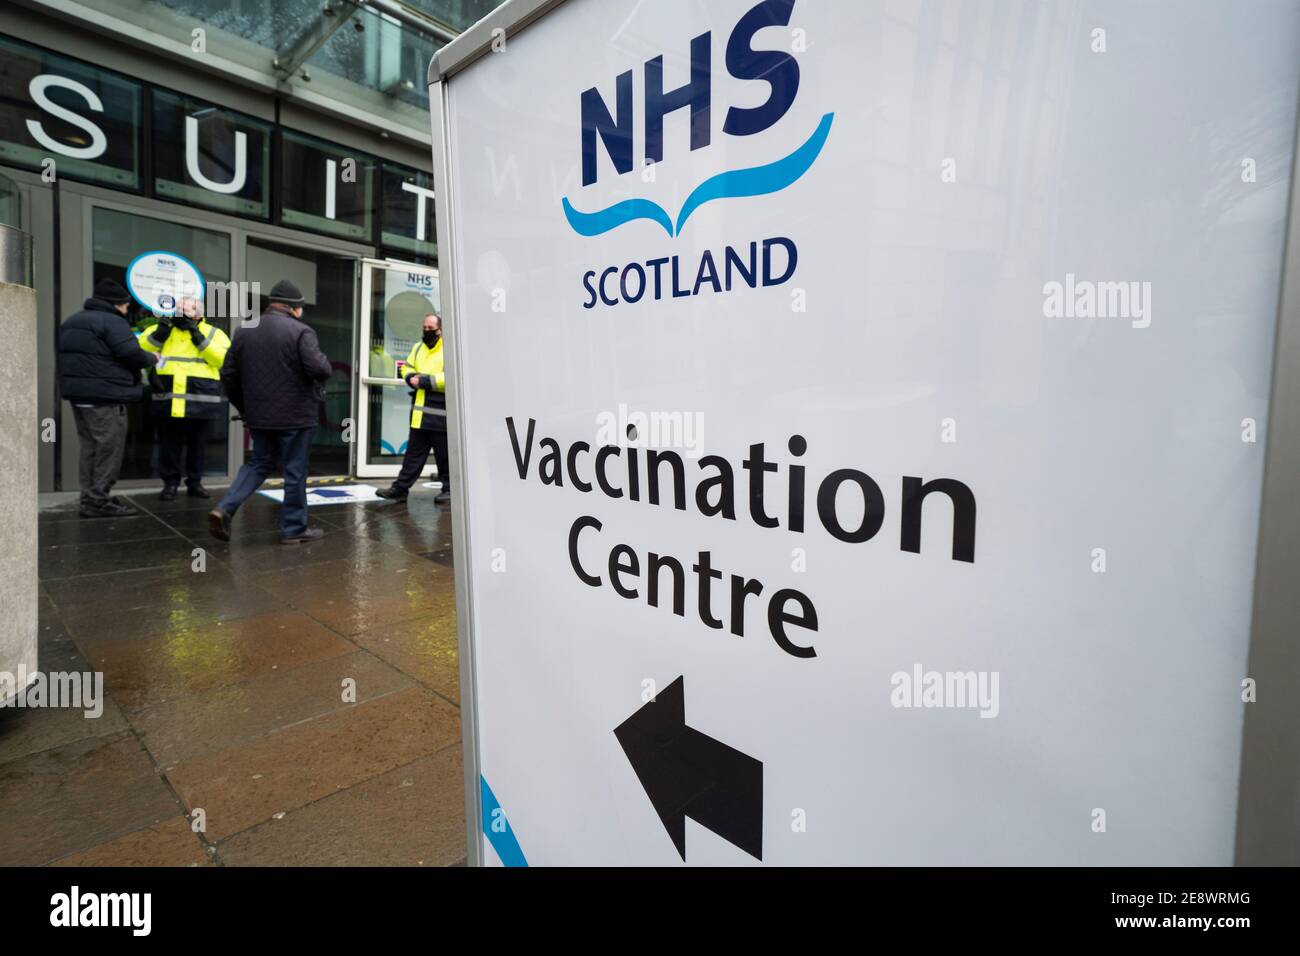 Edimburgo, Scozia, Regno Unito. 1 febbraio 2021. Il centro vaccinazioni Mass Covid-19 apre oggi all'EICC (Edinburgh International Conference Centre) di Edimburgo. I membri del pubblico con gli appuntamenti arrivano per le loro vaccinazioni. Iain Masterton/Alamy Live News Foto Stock